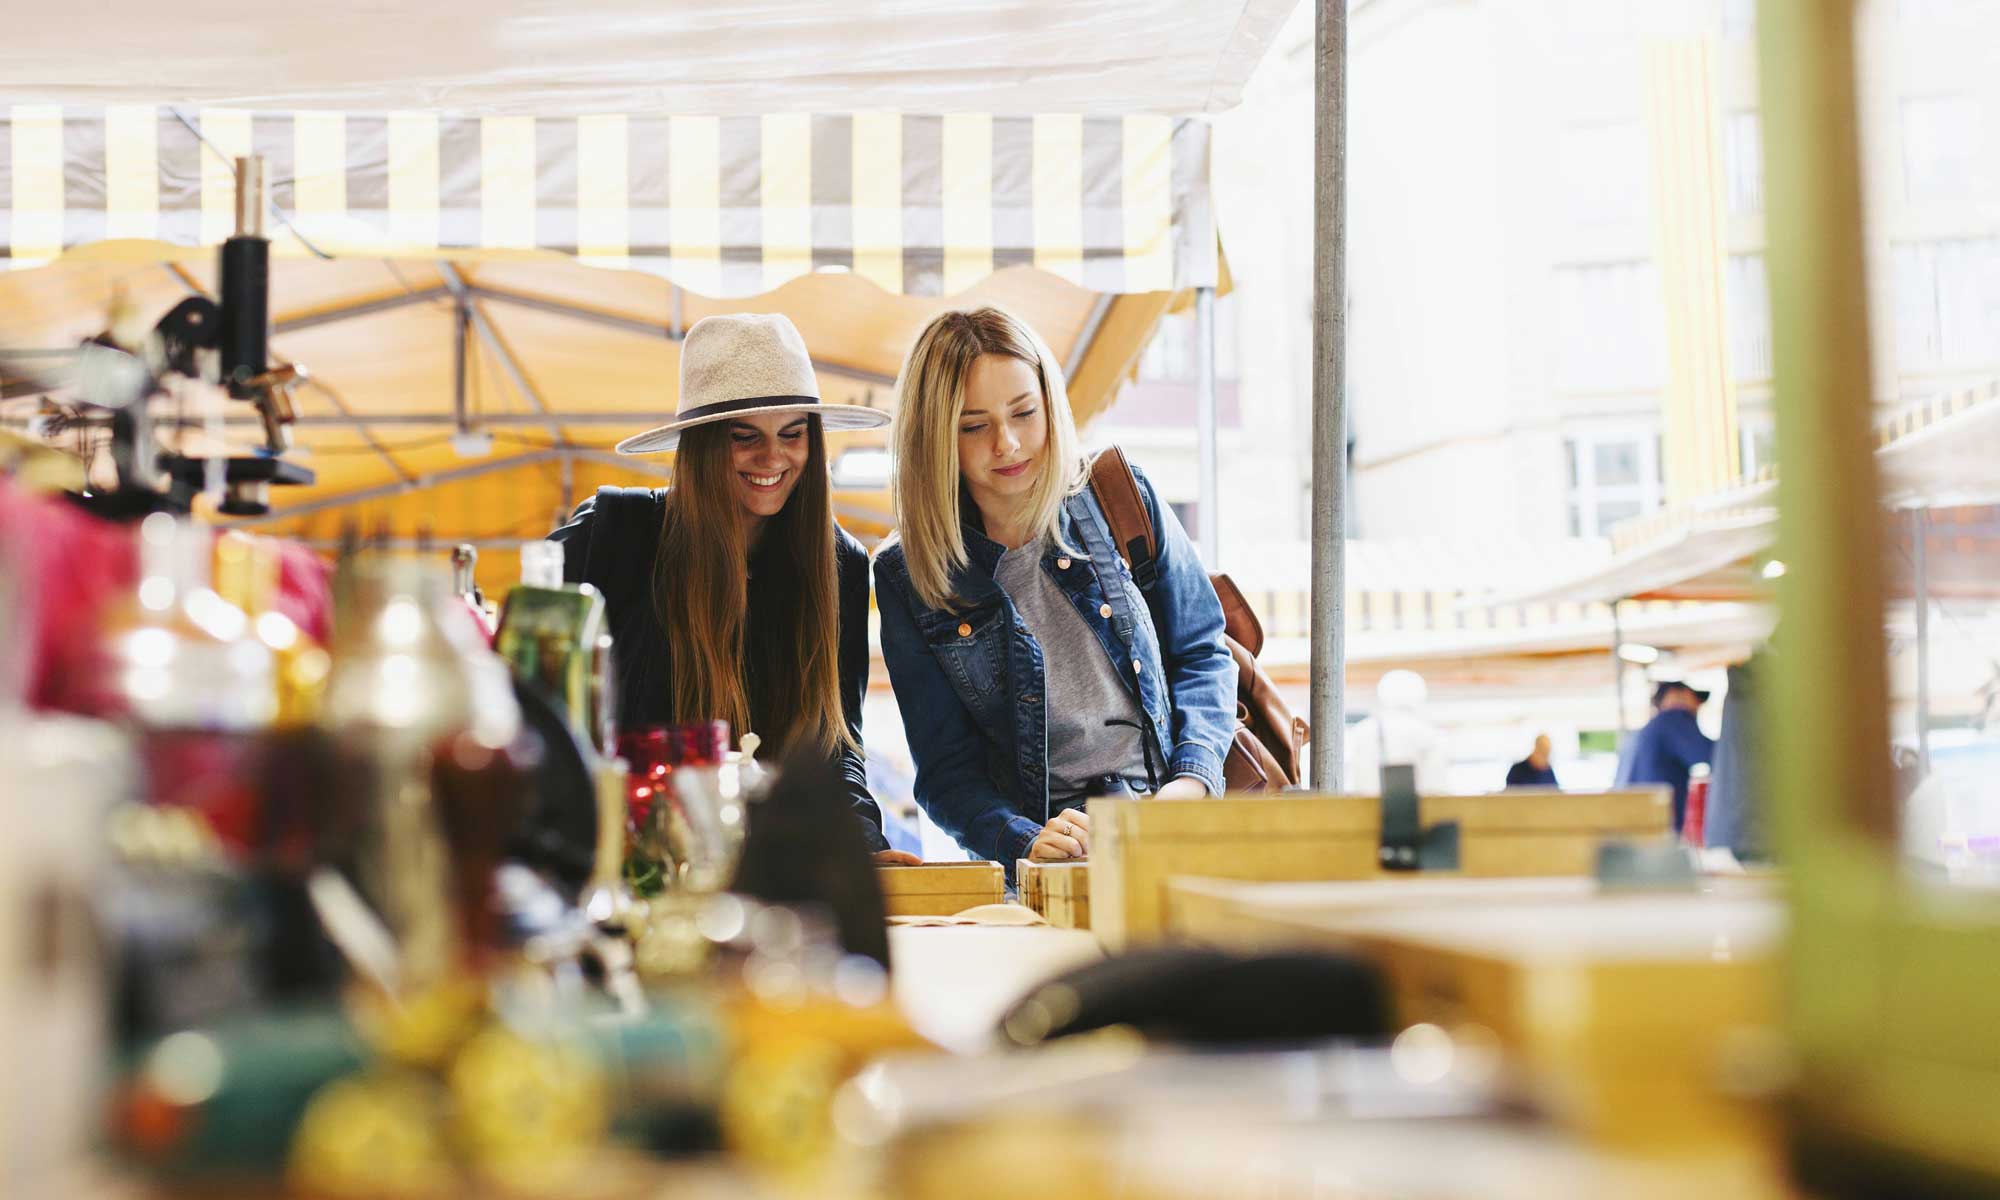 Zwei junge Frauen schlendern über einen Flohmarkt